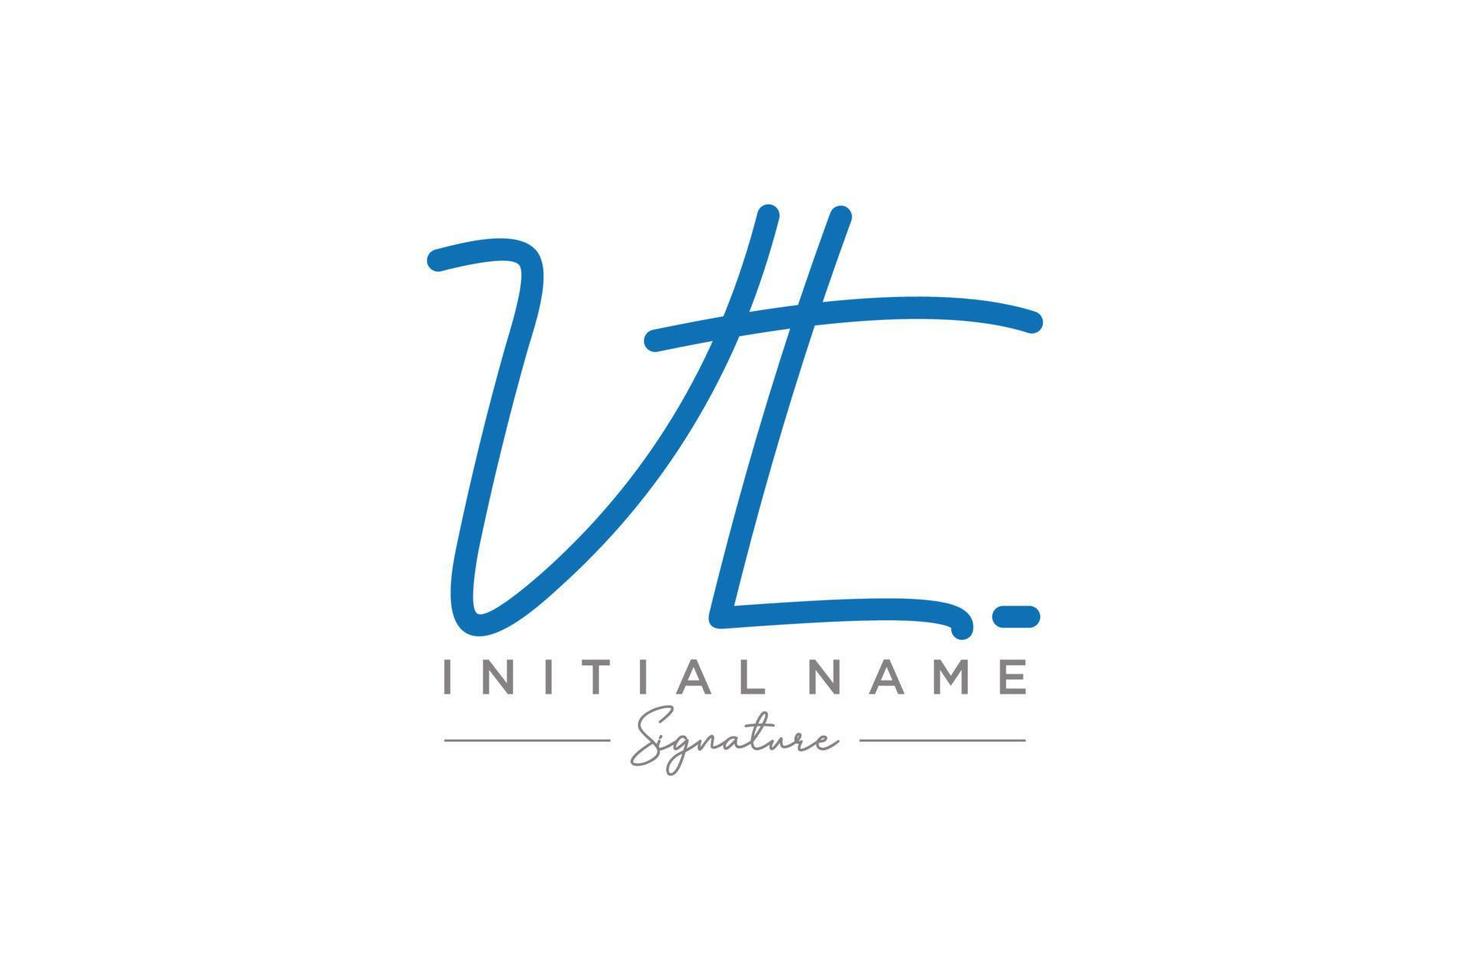 vector de plantilla de logotipo de firma vt inicial. ilustración de vector de letras de caligrafía dibujada a mano.